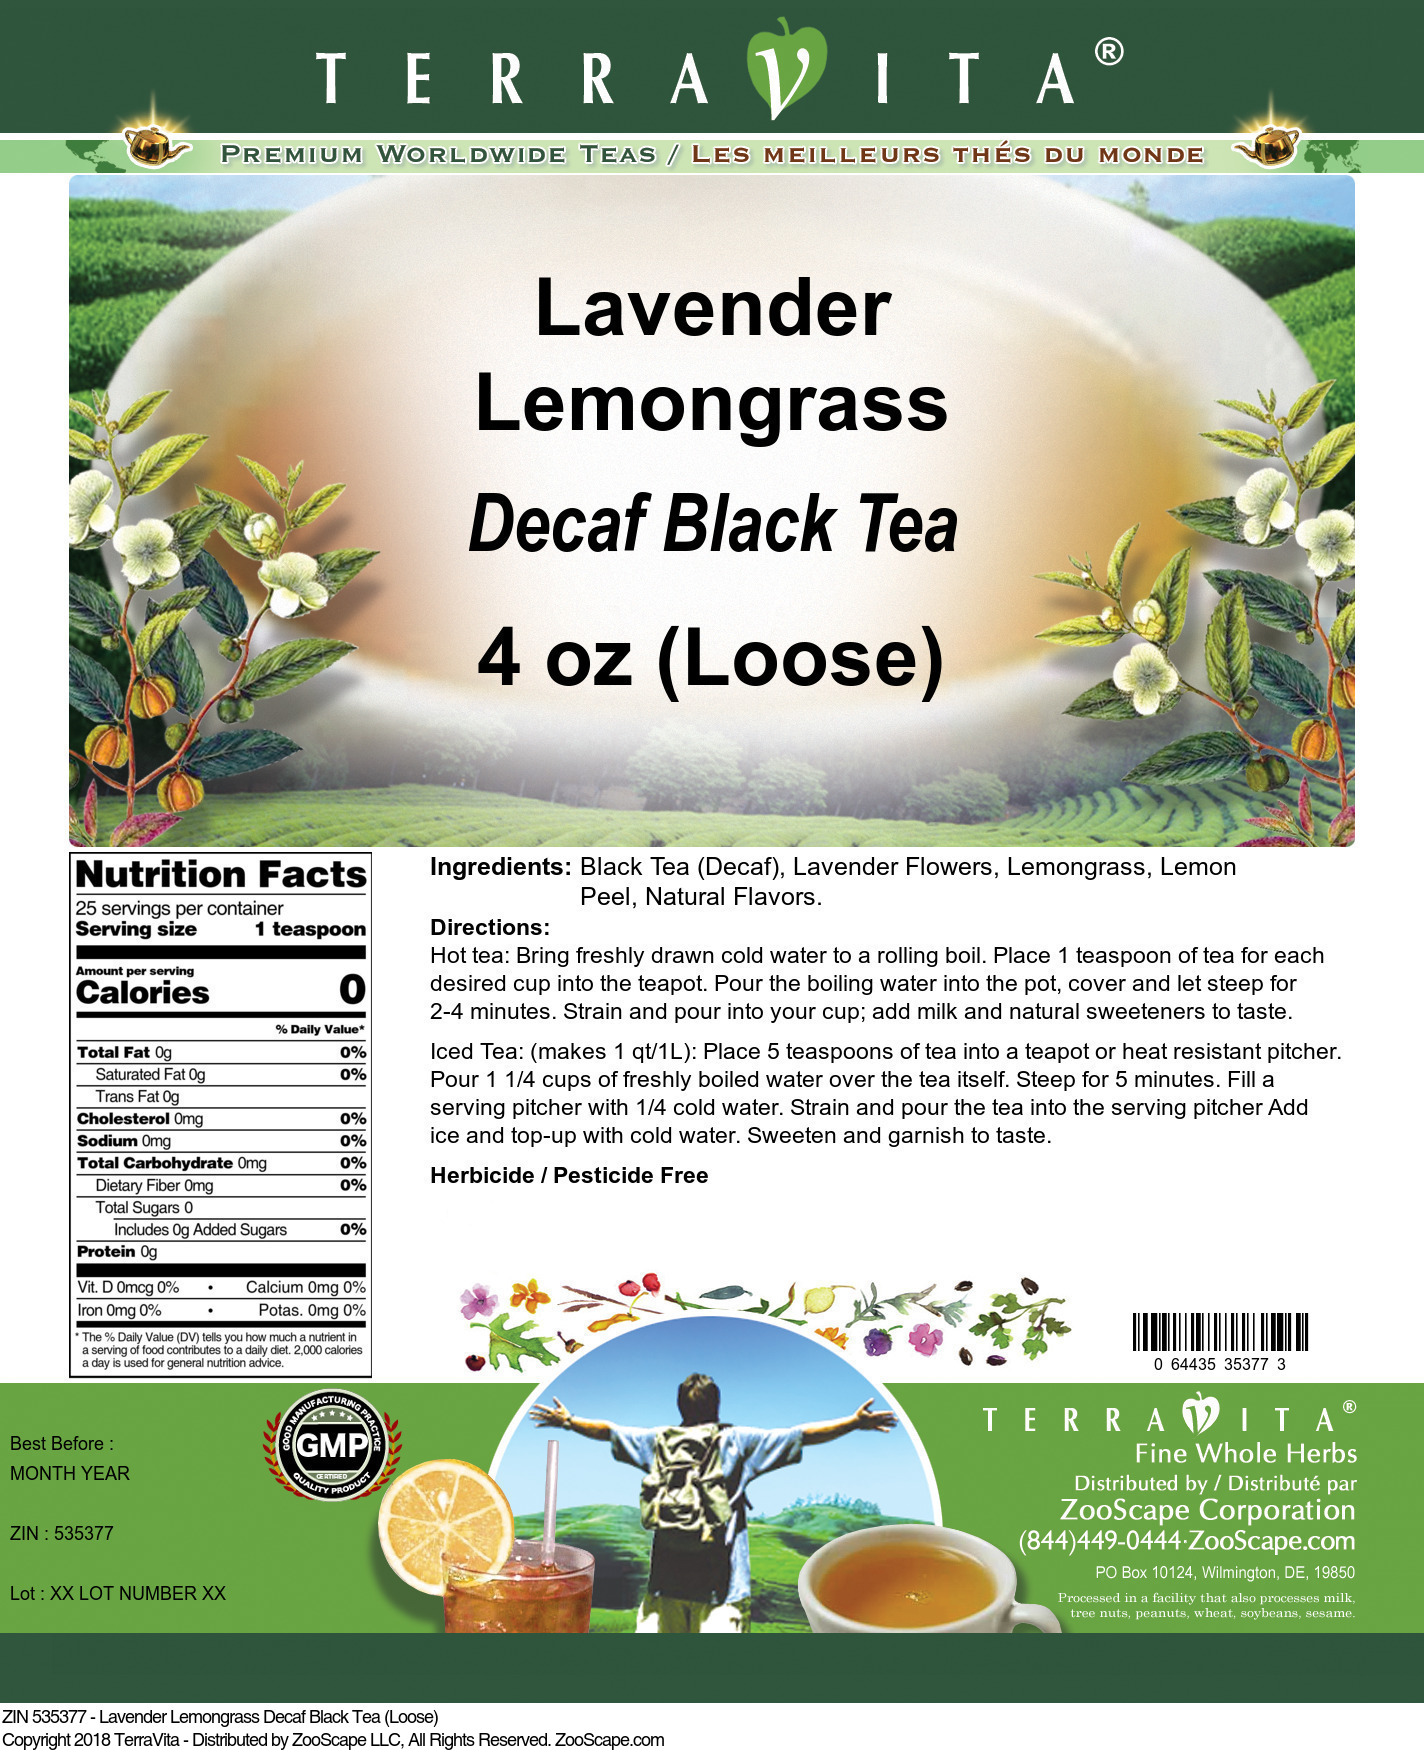 Lavender Lemongrass Decaf Black Tea (Loose) - Label